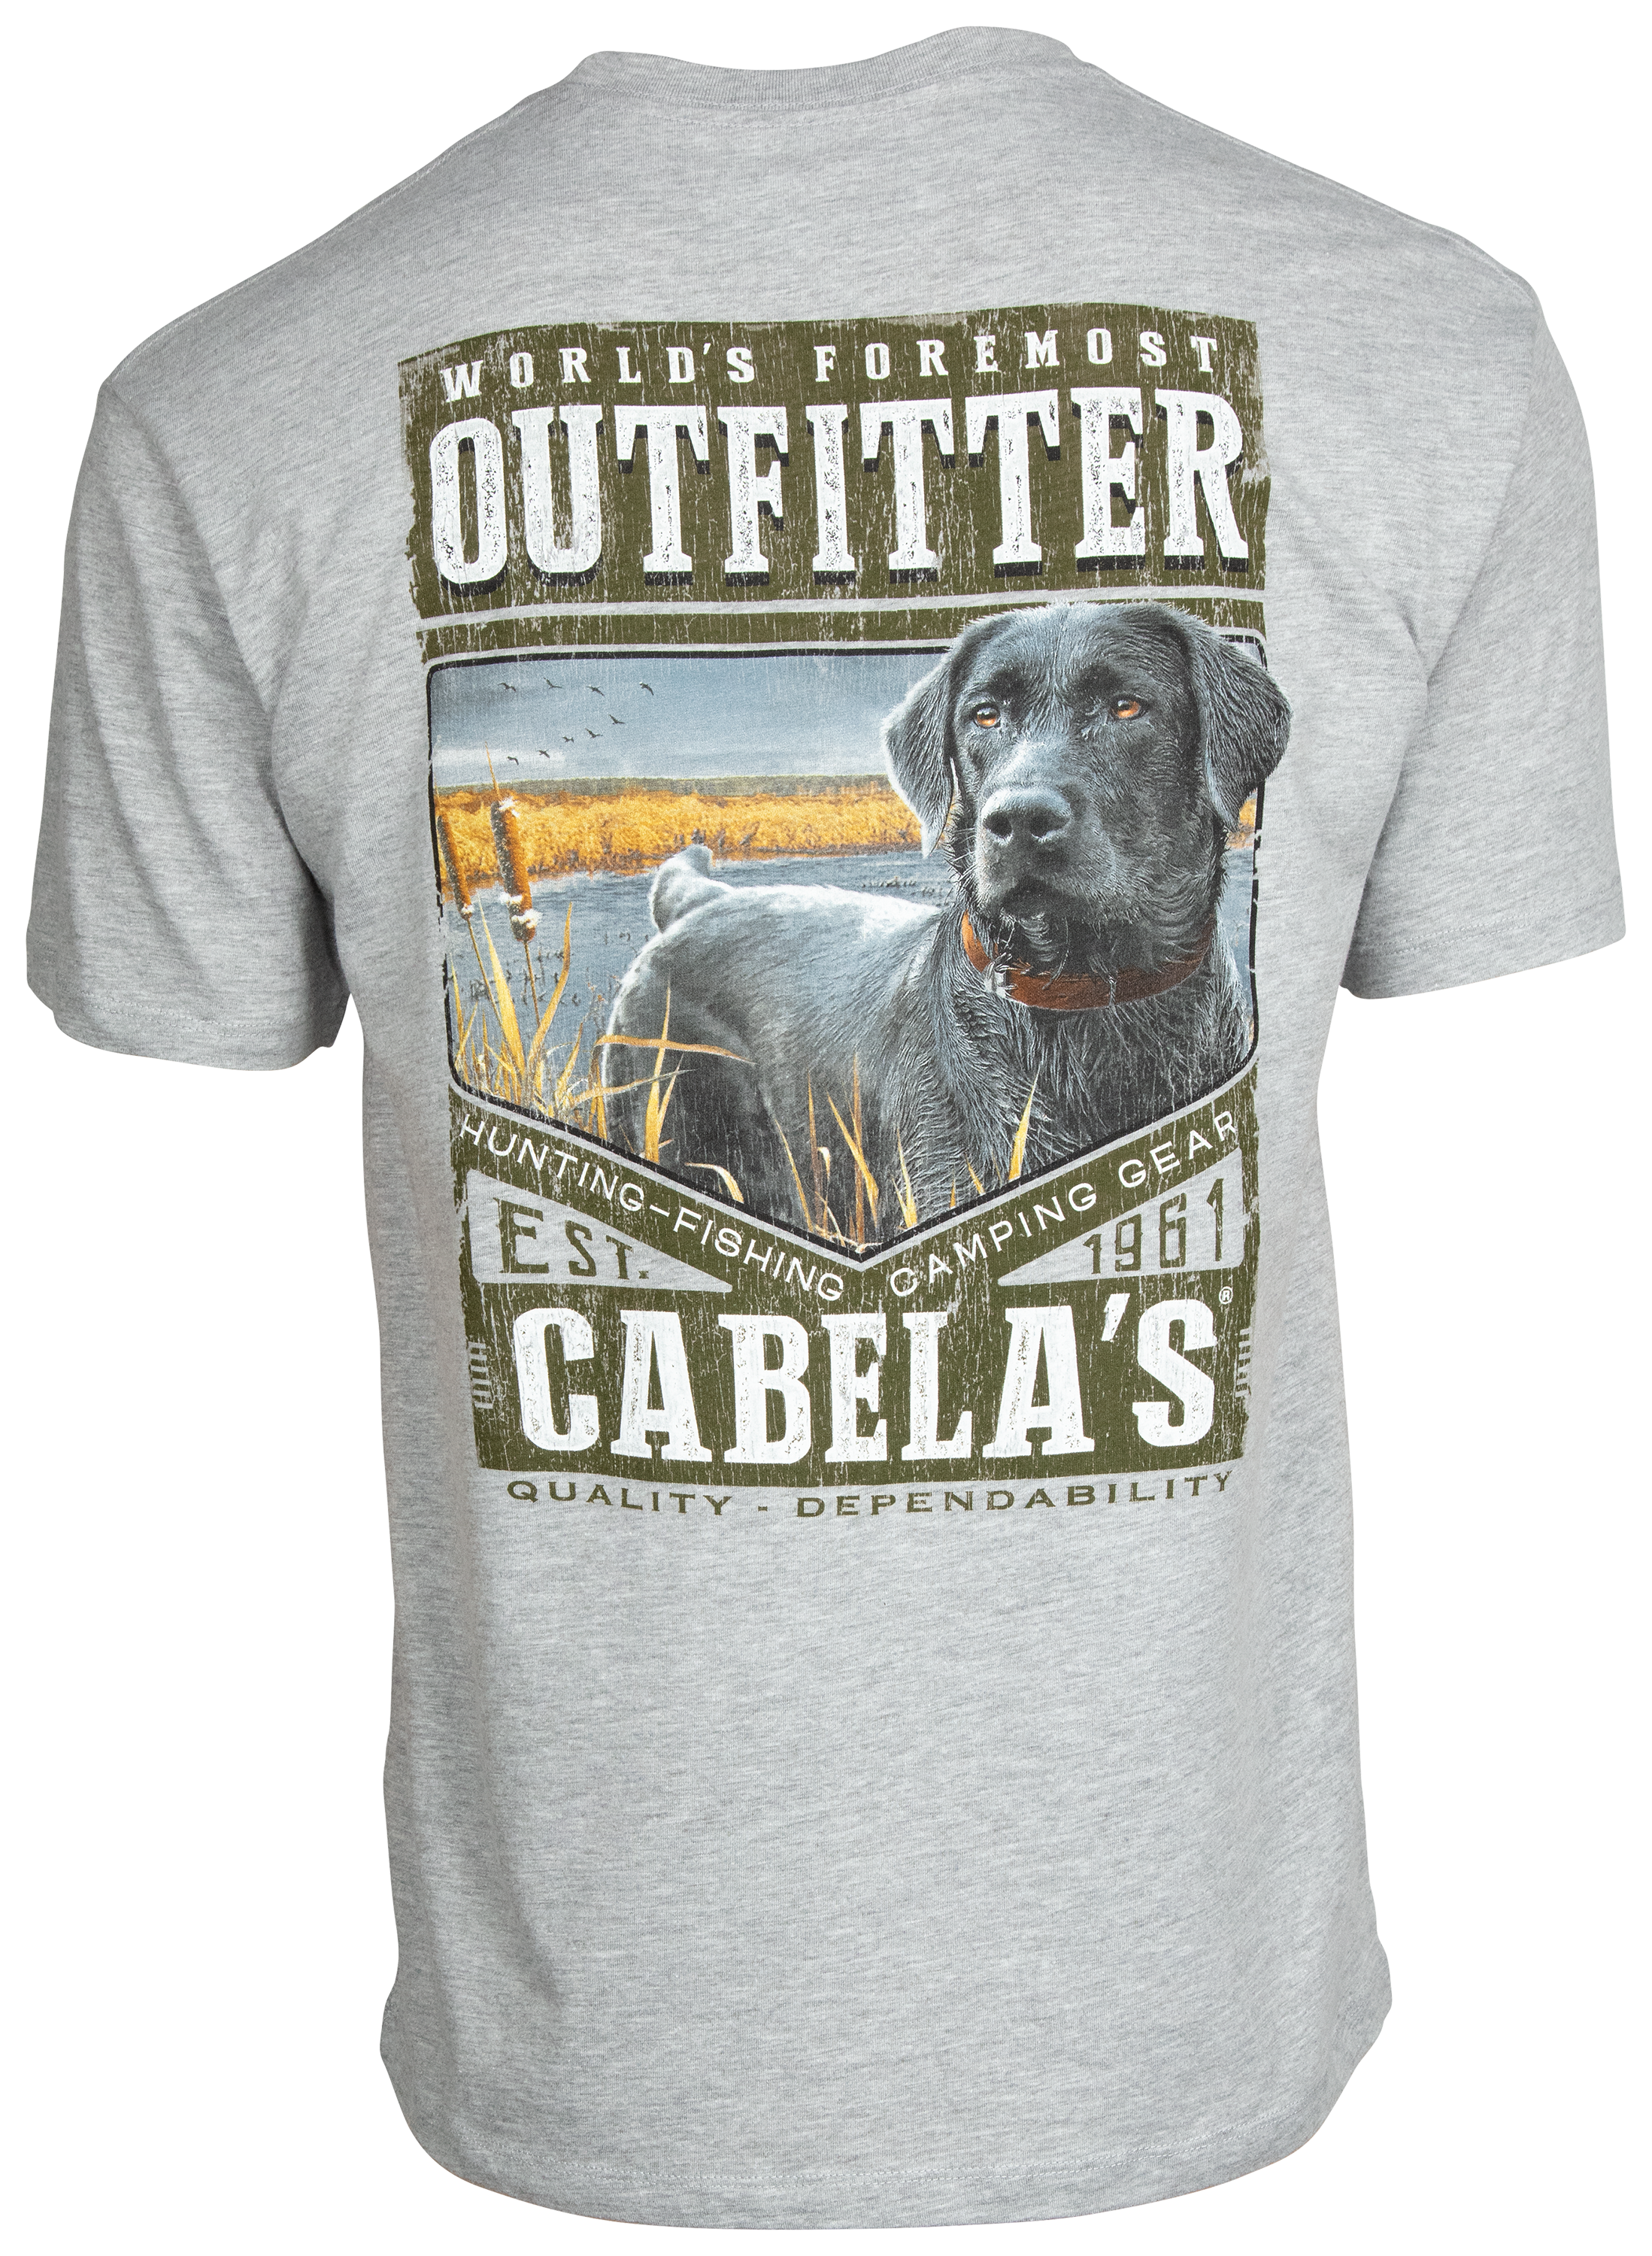 Cabela's Don't Stop Retrievin' Short-Sleeve T-Shirt for Men